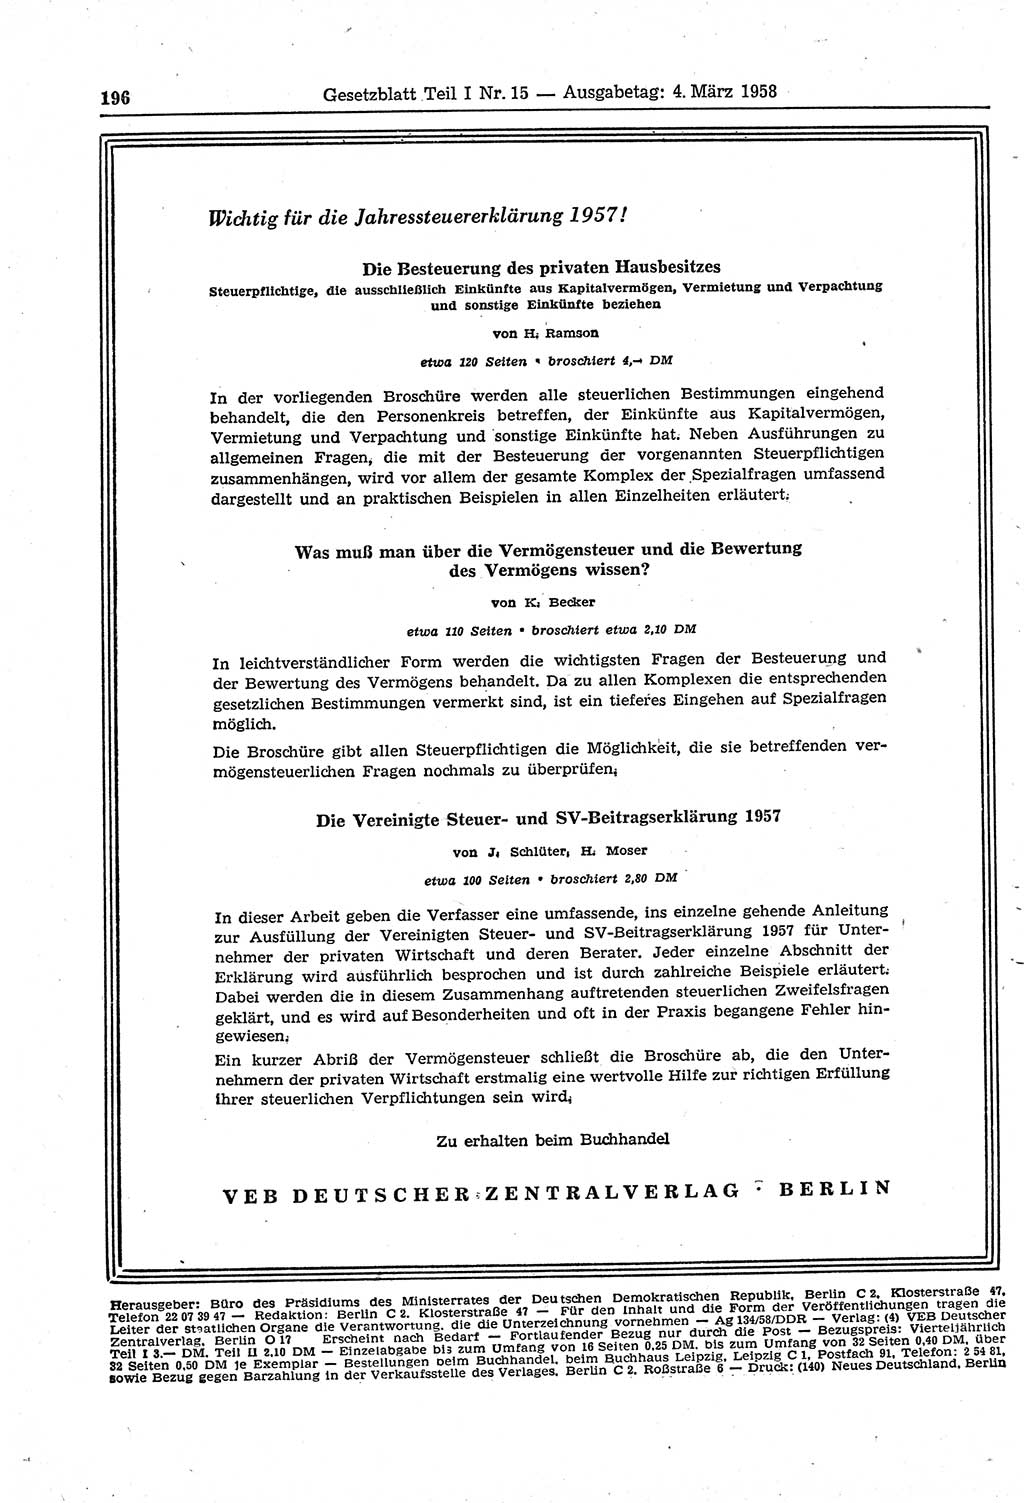 Gesetzblatt (GBl.) der Deutschen Demokratischen Republik (DDR) Teil Ⅰ 1958, Seite 196 (GBl. DDR Ⅰ 1958, S. 196)